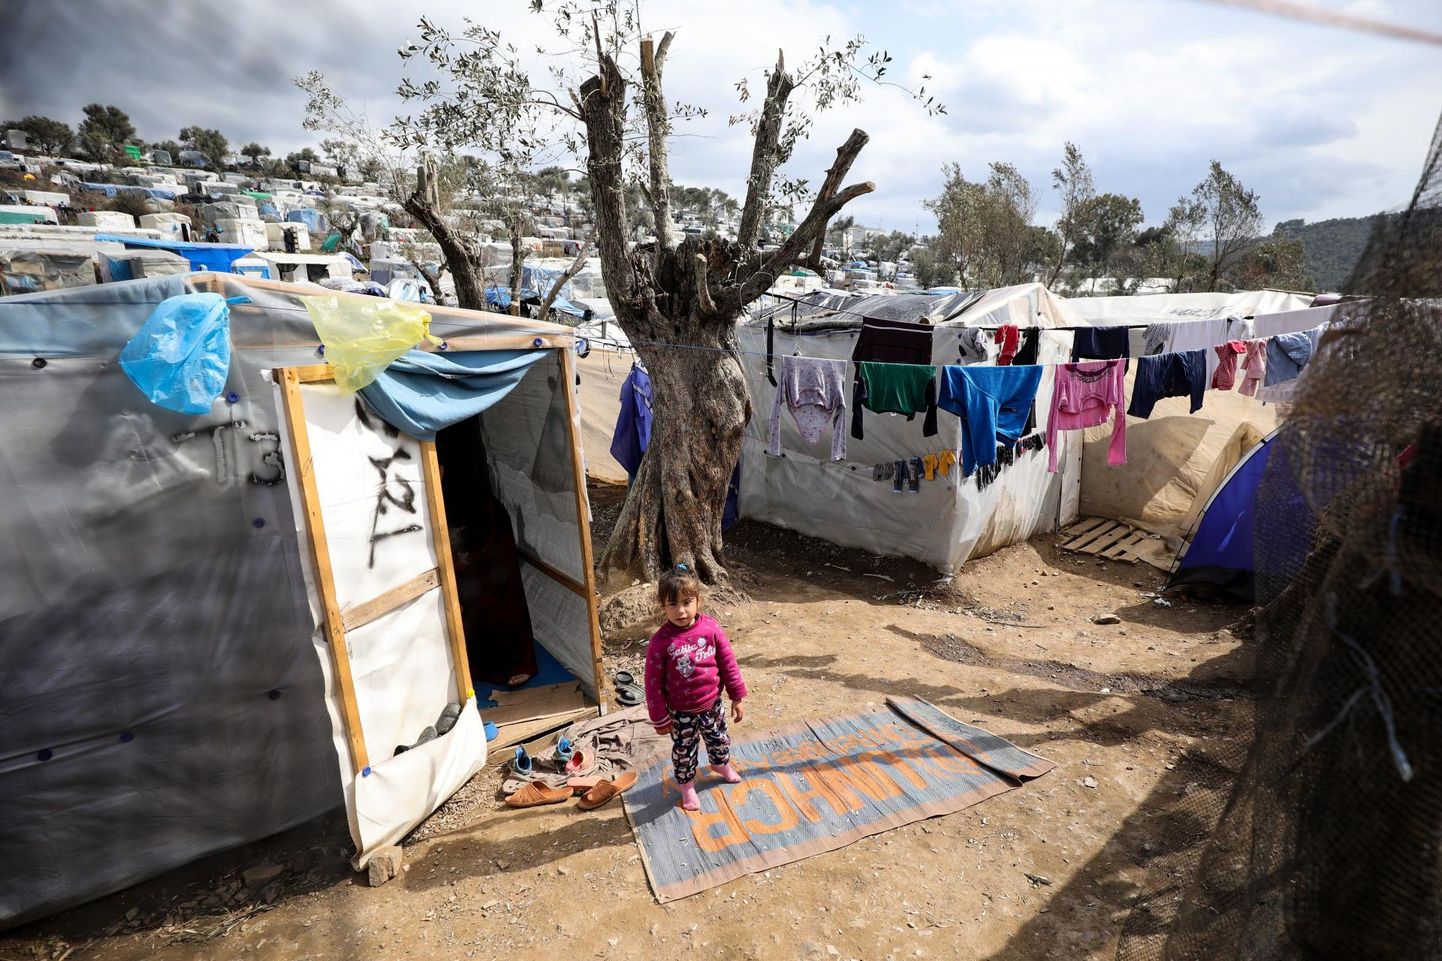 Kreekas Lesbose saarel Moria põgenikelaagris elab praegu ligikaudu 20 000 inimest, kuigi see loodi vaid 3000 inimese majutamiseks.